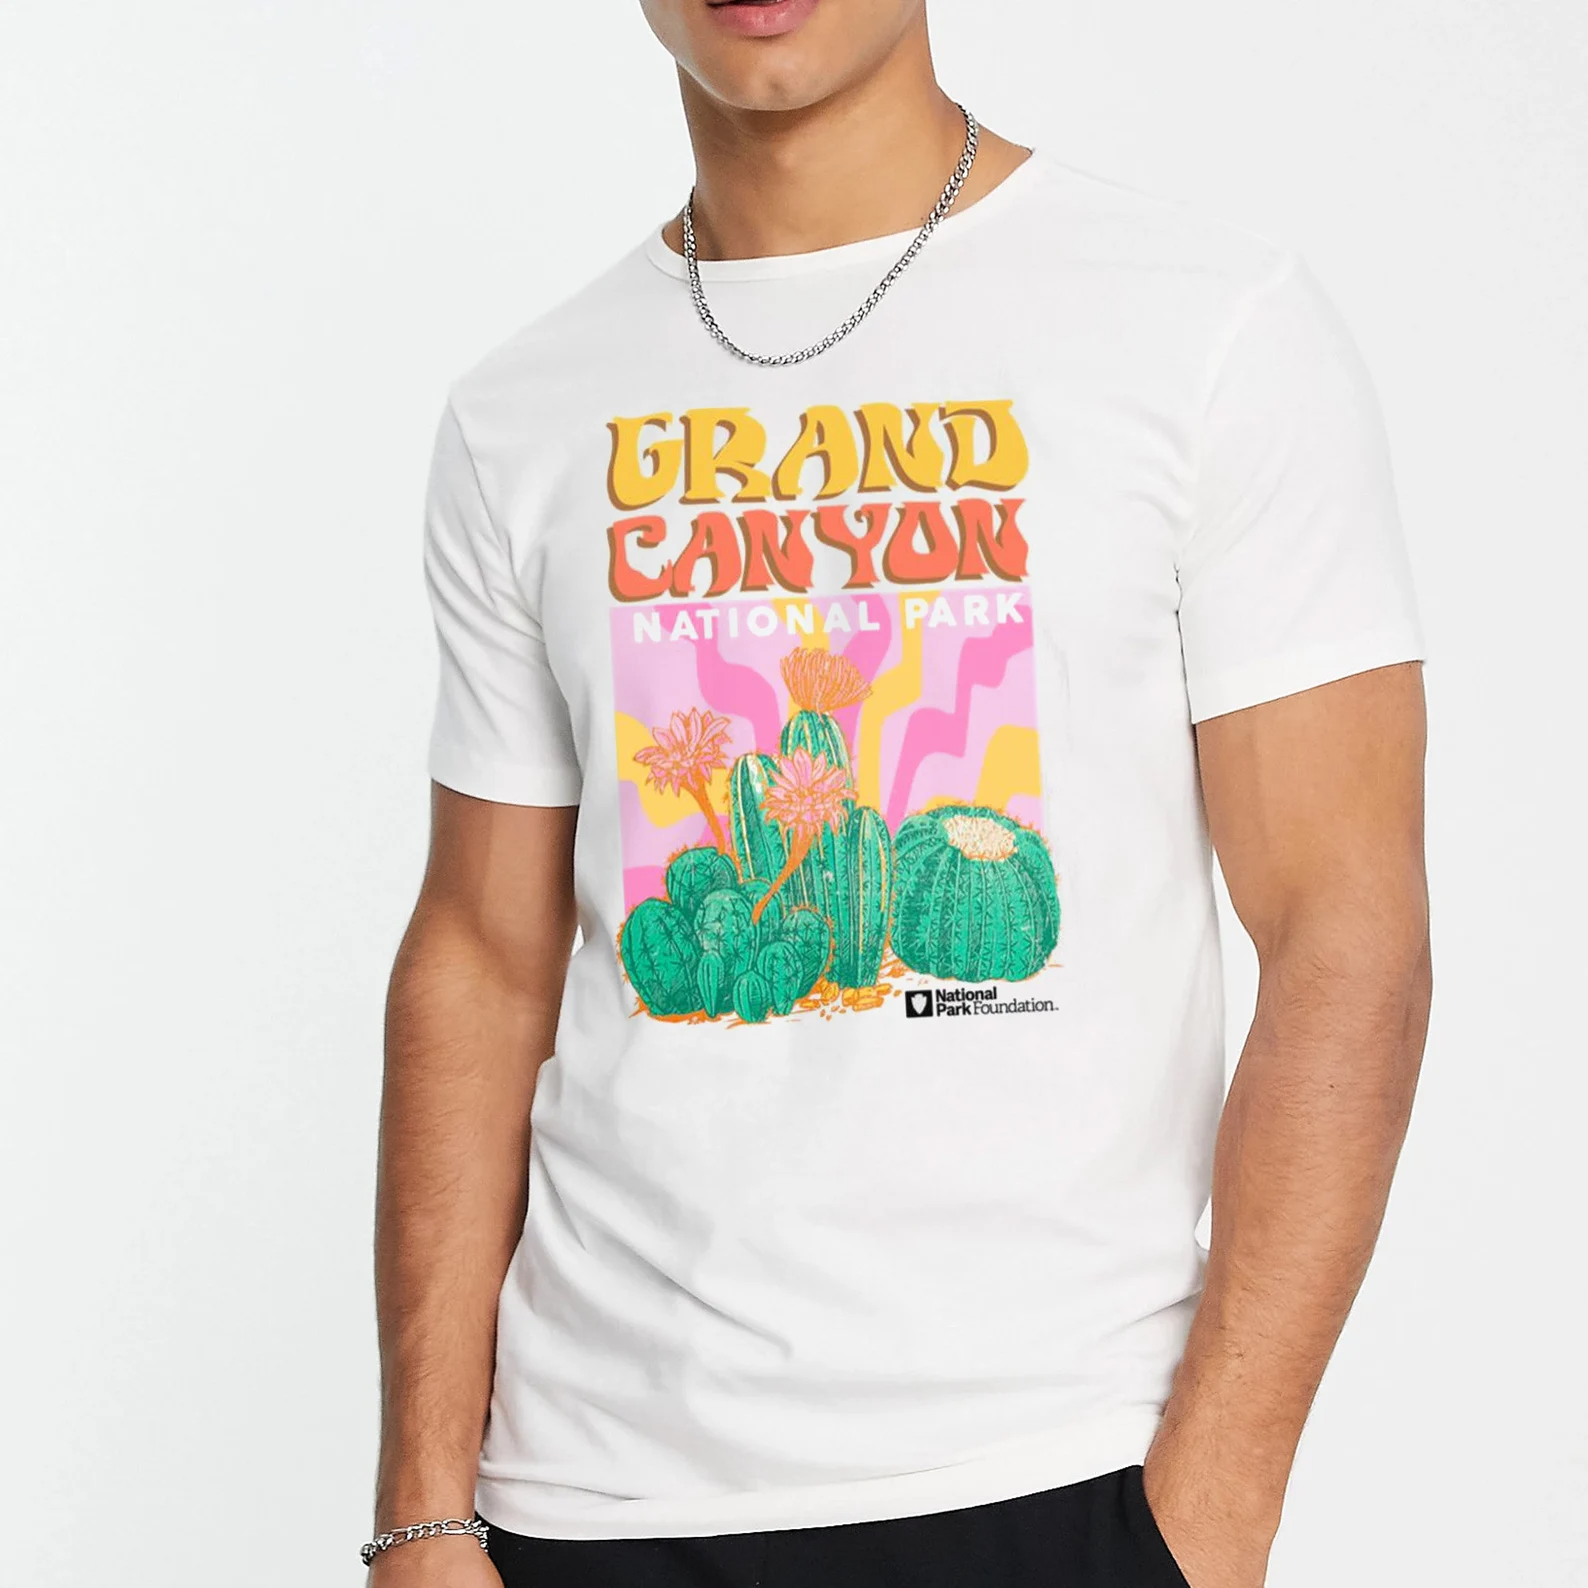 Lesteredveret + Bad Bunny Shirt, Target Grand Canyon Shirt